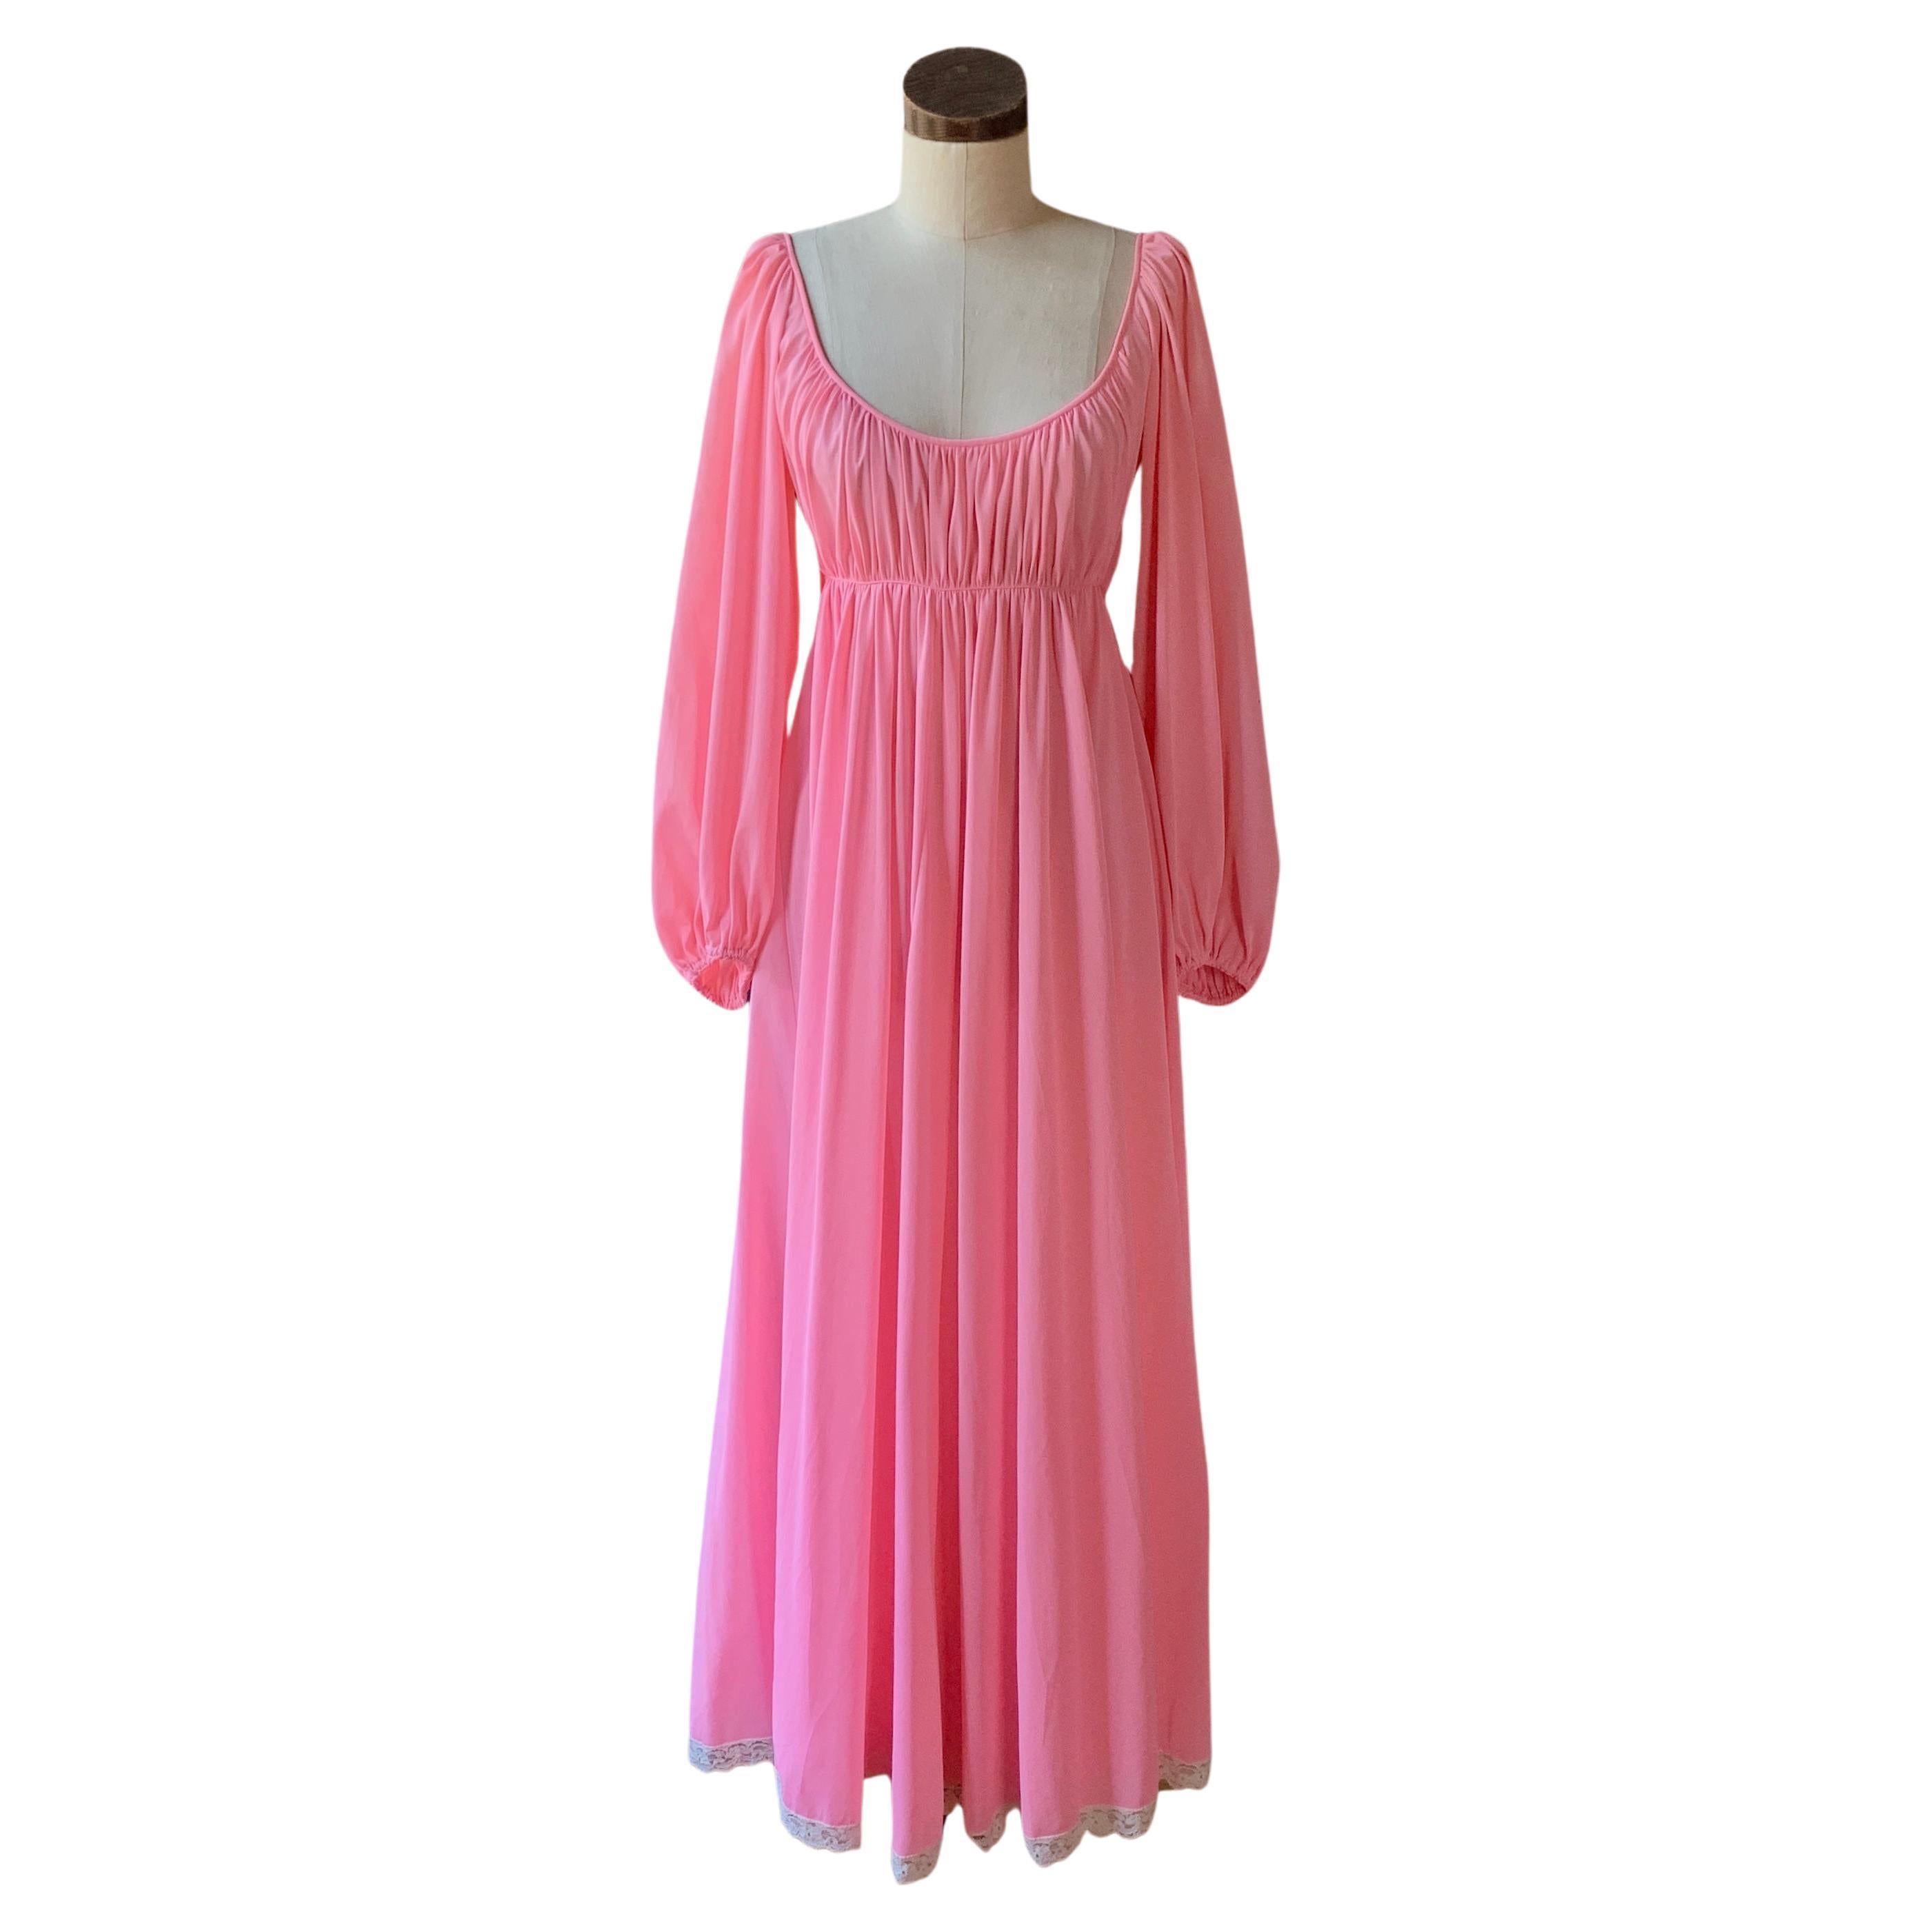 Robe de nuit rose vintage CLARE SANDRA LUCIE ANN plissée épaules dénudées 36 